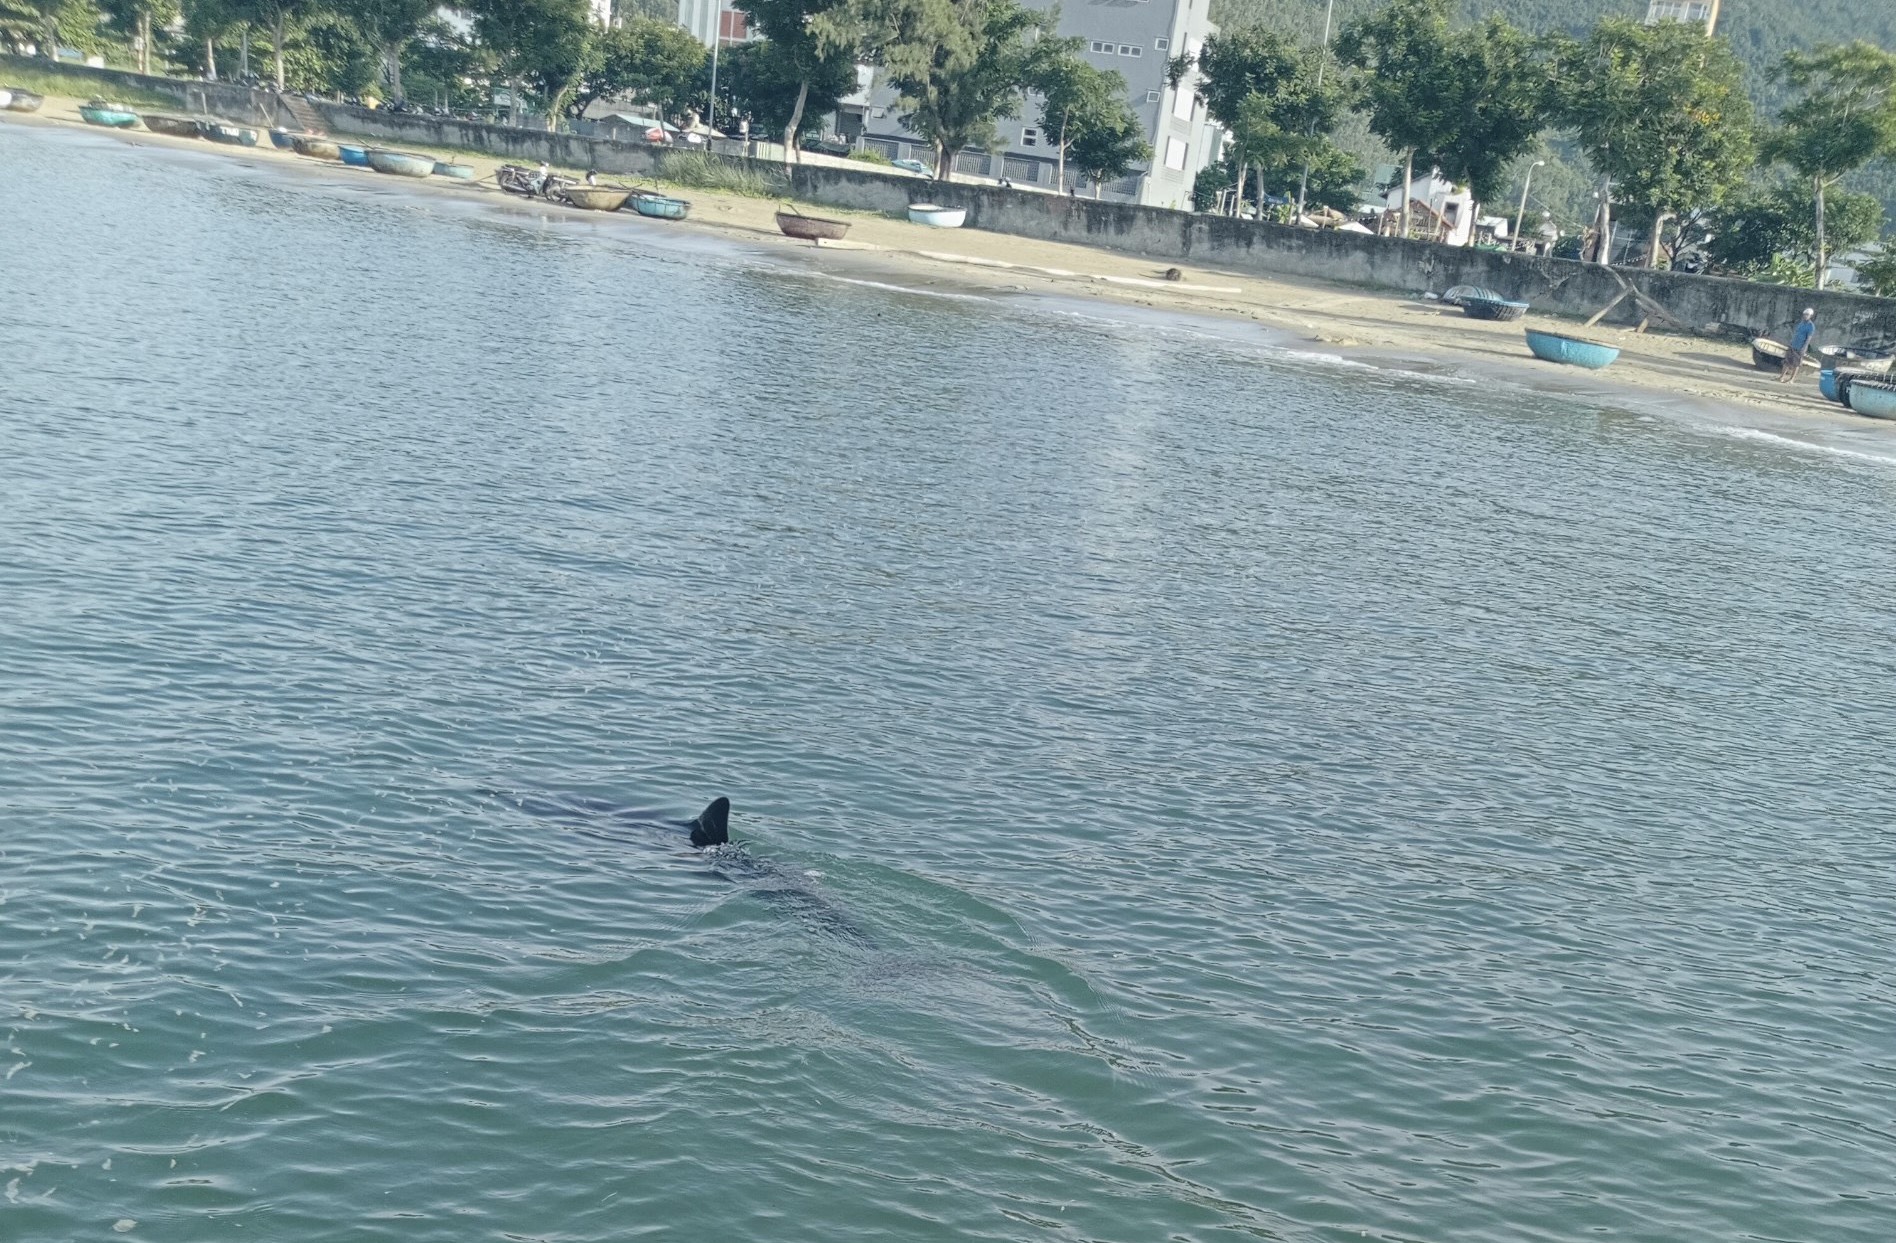 Hình ảnh cá heo bơi gần bờ do anh Nguyễn Văn Hy chụp lại. Ảnh: Hy Nguyễn